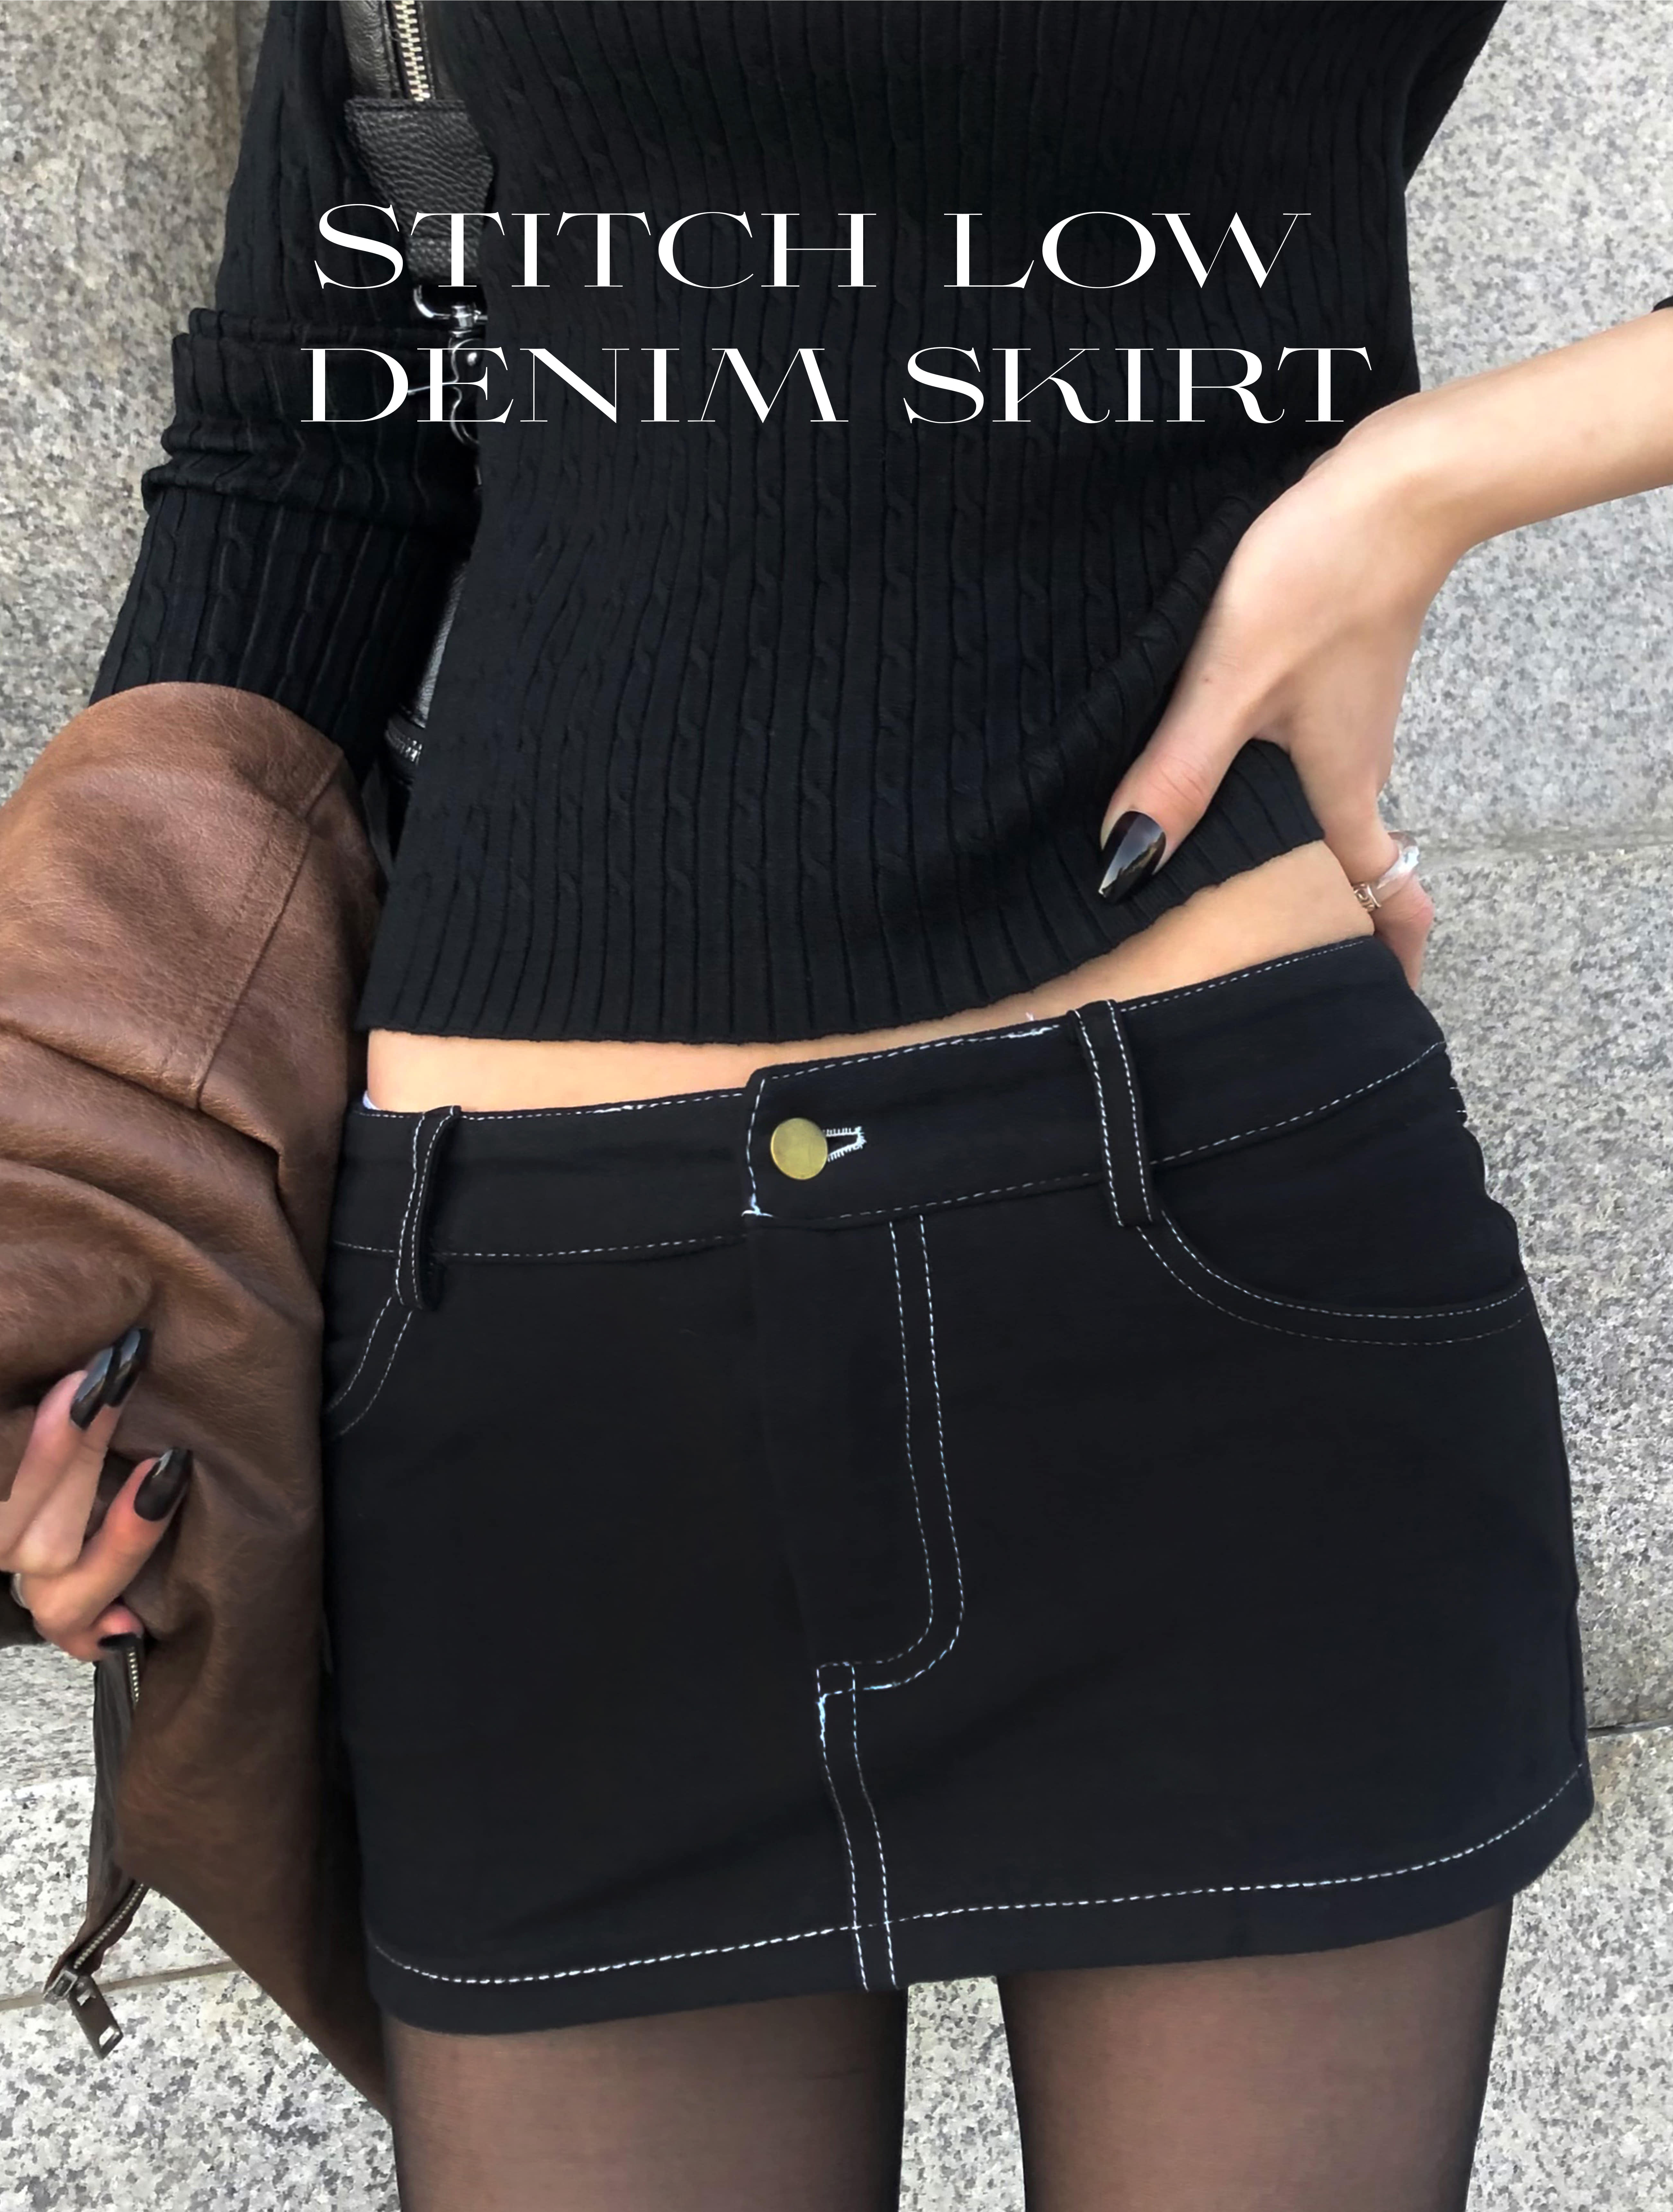 Stitch low denim skirt